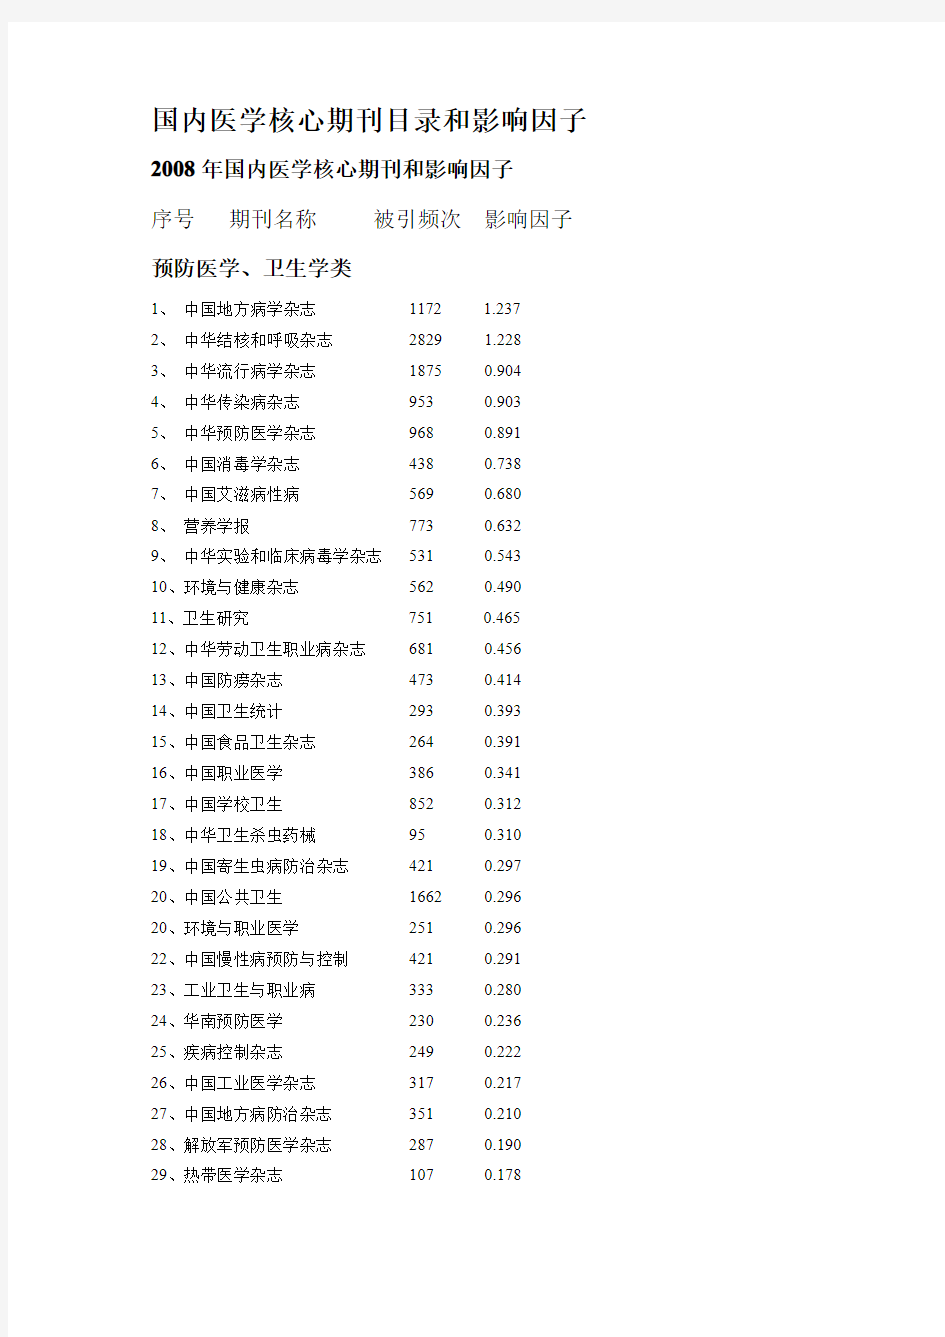 国内医学中文核心期刊目录和影响因子